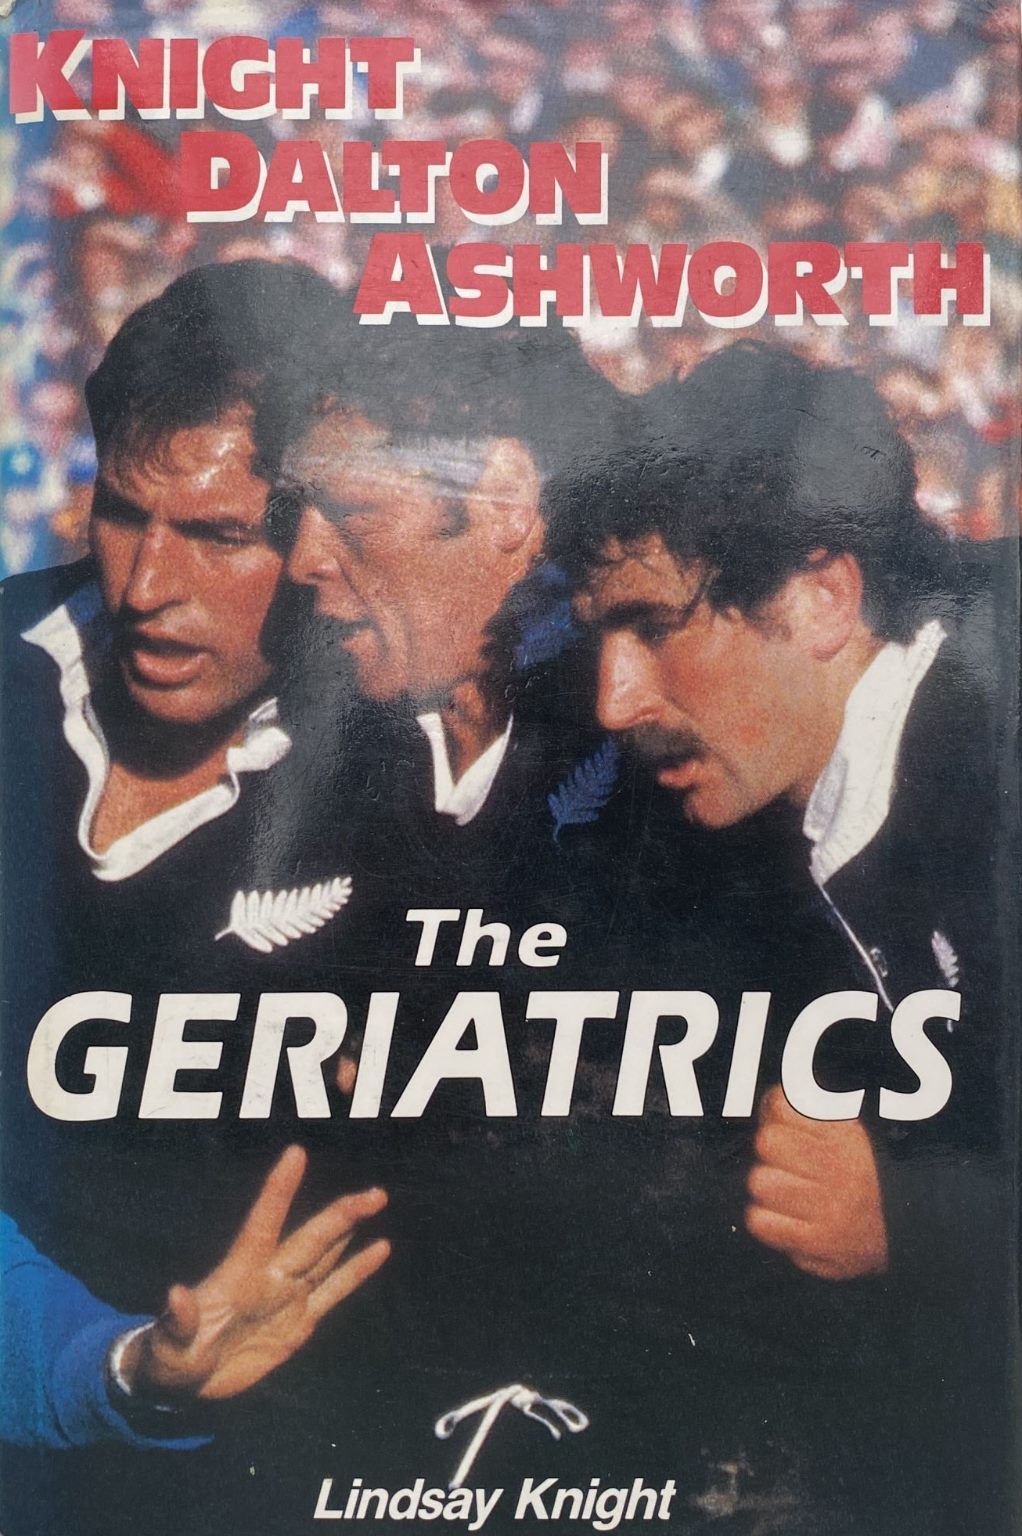 THE GERIATRICS: Gary Knight, Andy Dalton, John Ashworth